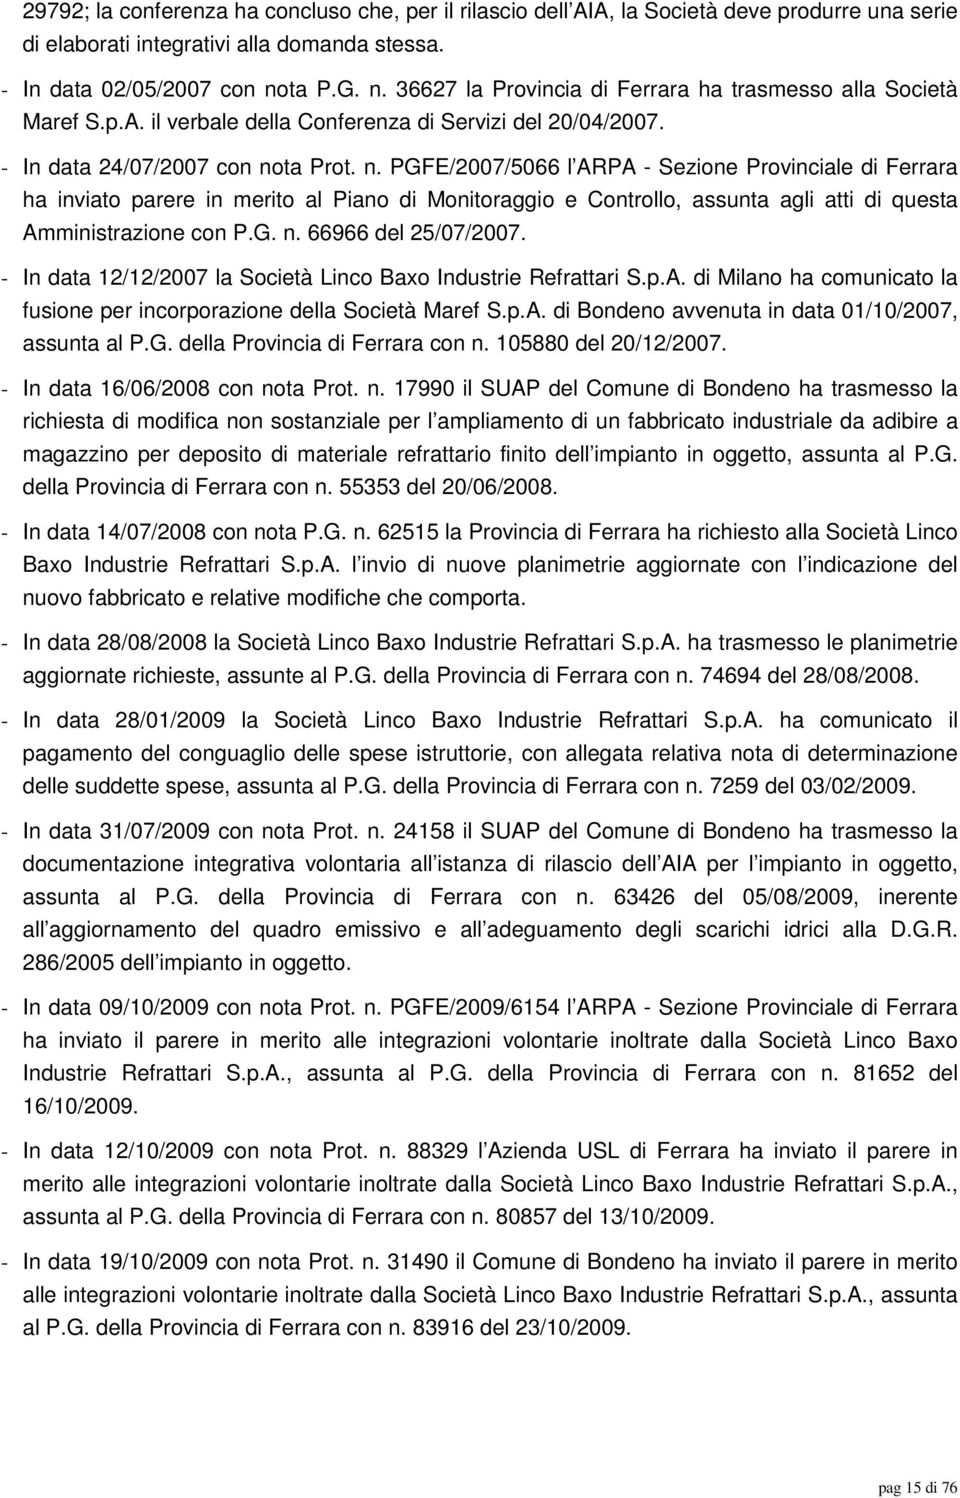 G. n. 66966 del 25/07/2007. - In data 12/12/2007 la Società Linco Baxo Industrie Refrattari S.p.A. di Milano ha comunicato la fusione per incorporazione della Società Maref S.p.A. di Bondeno avvenuta in data 01/10/2007, assunta al P.